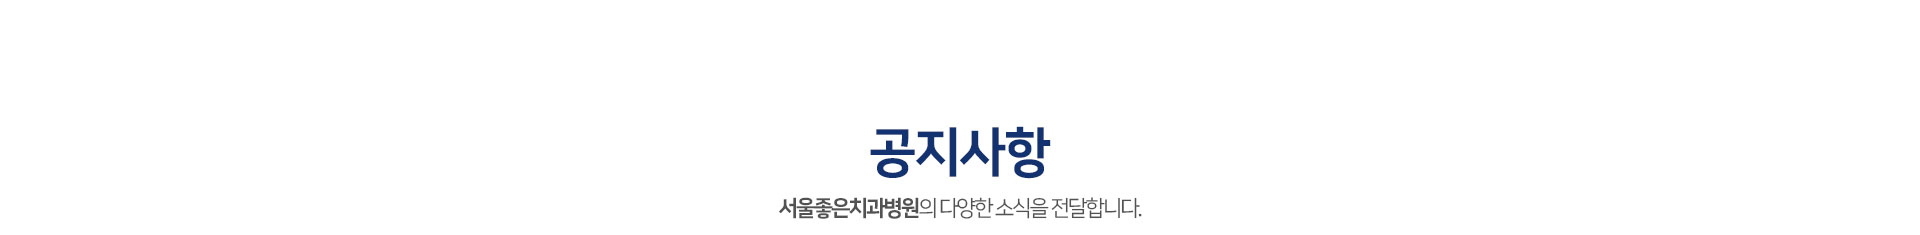 공지사항-서울좋은치과병원의-다양한-소식을-전달합니다